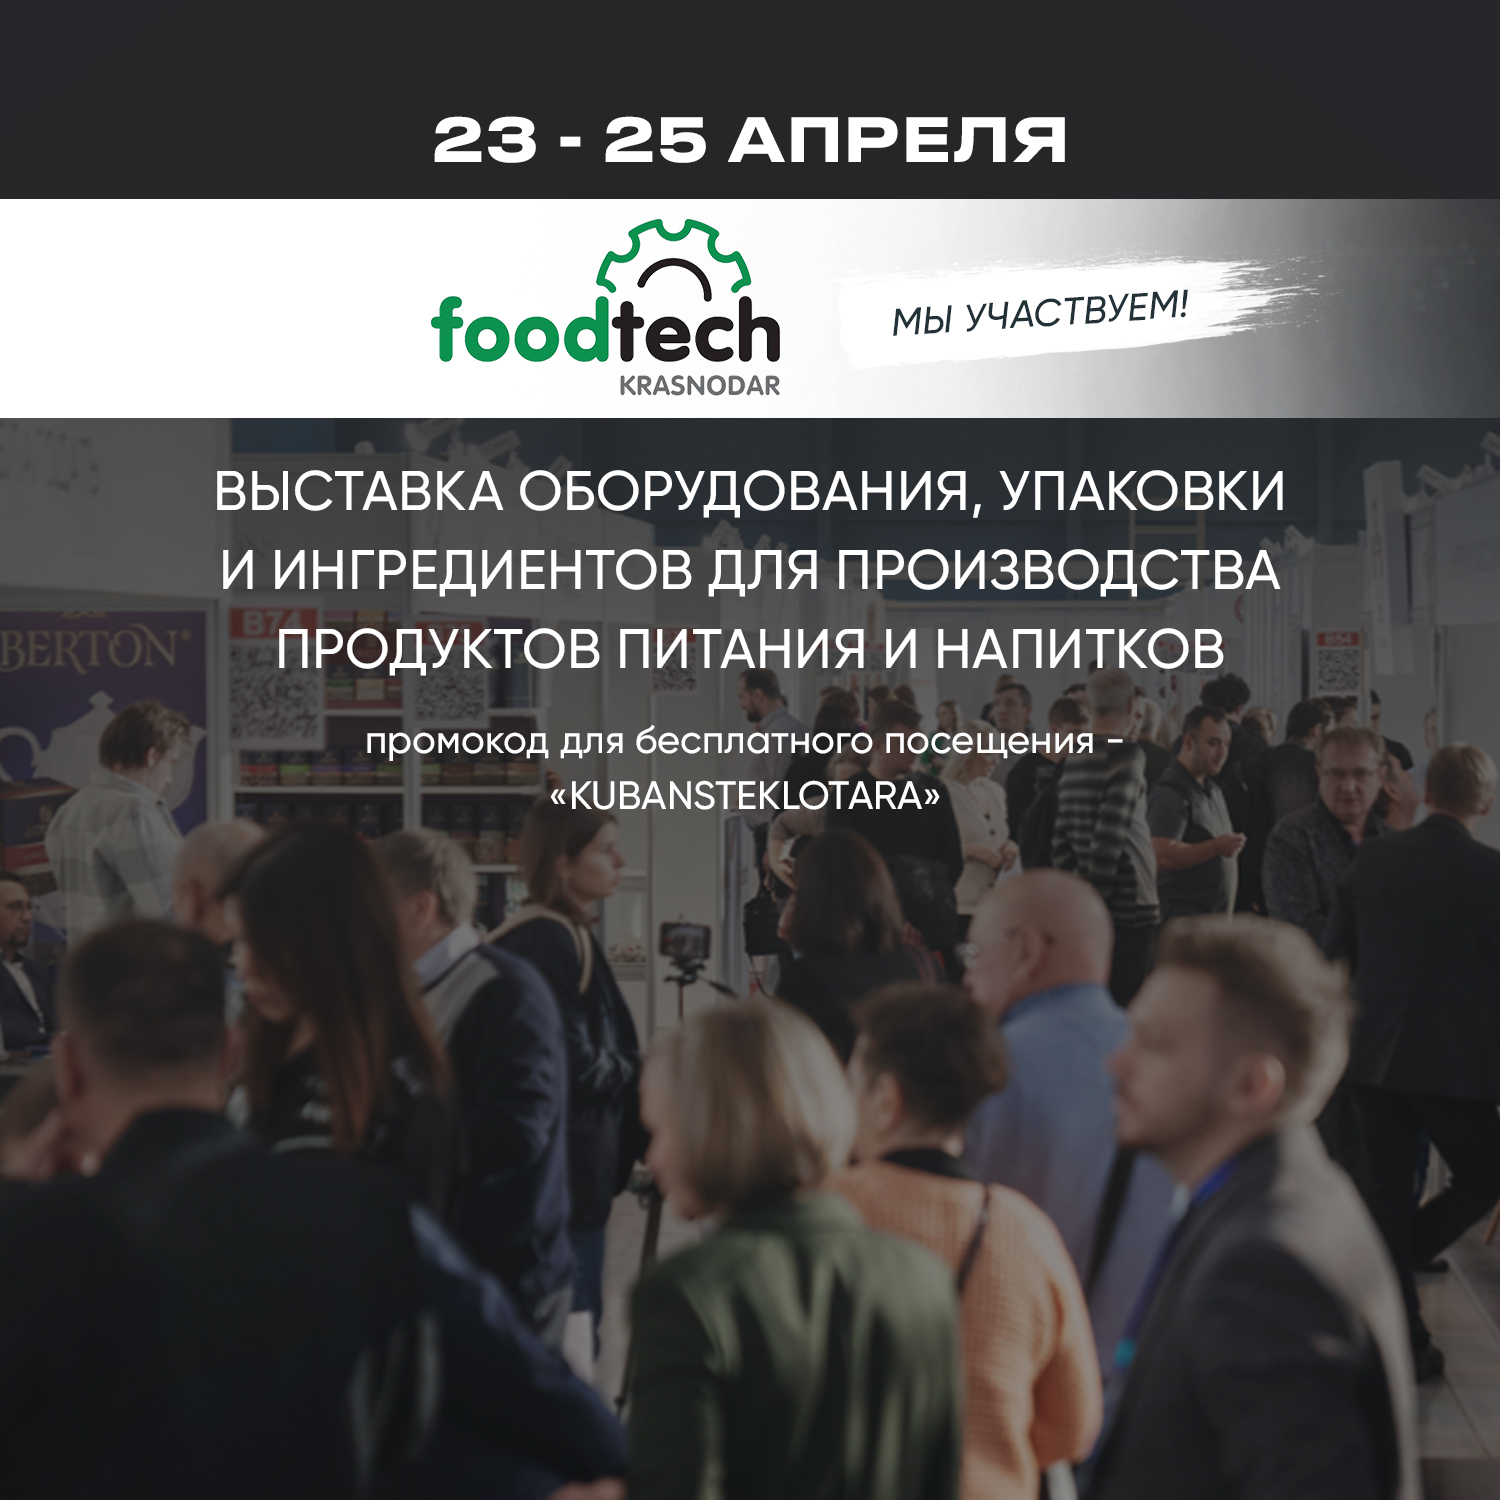 Участие в выставке "FoodTech Краснодар"